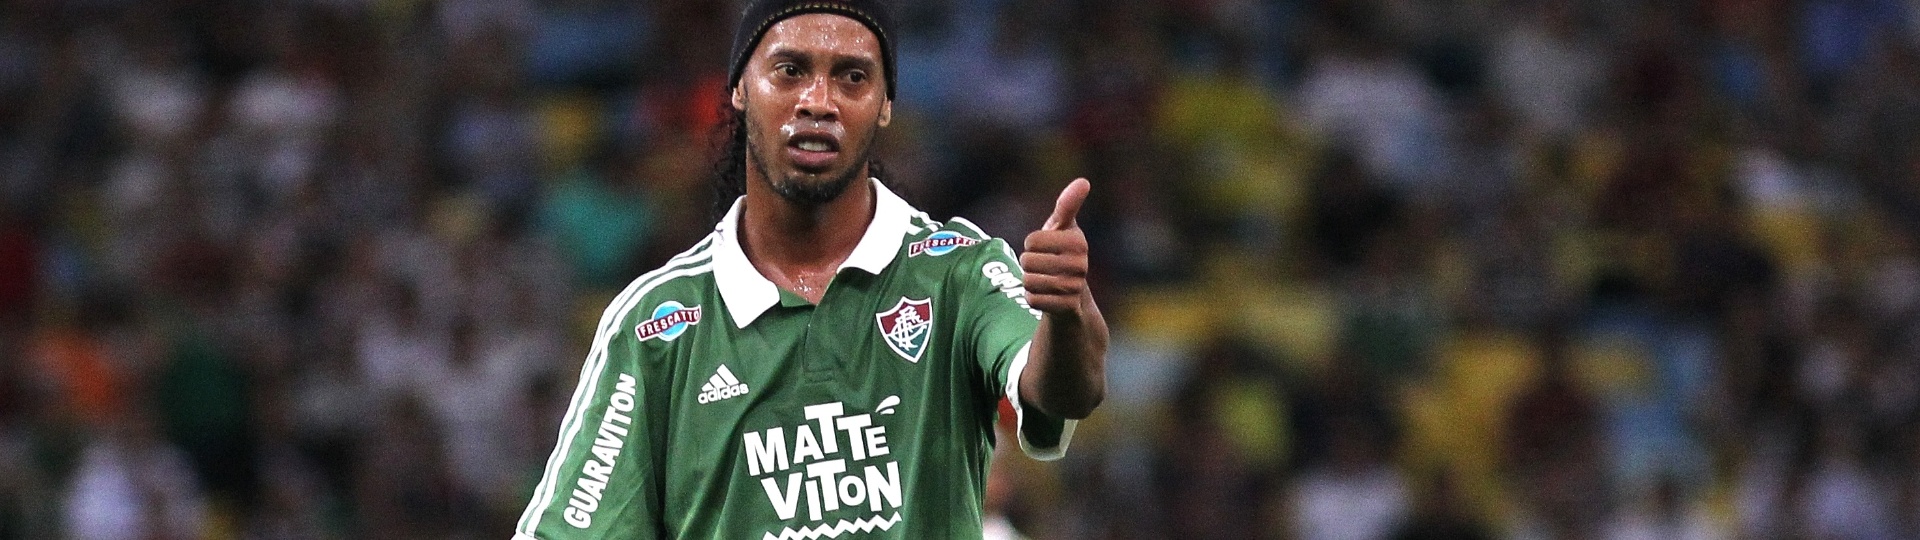 Ronaldinho Gaúcho gesticula com colegas de equipe durante confronto contra o Paysandu